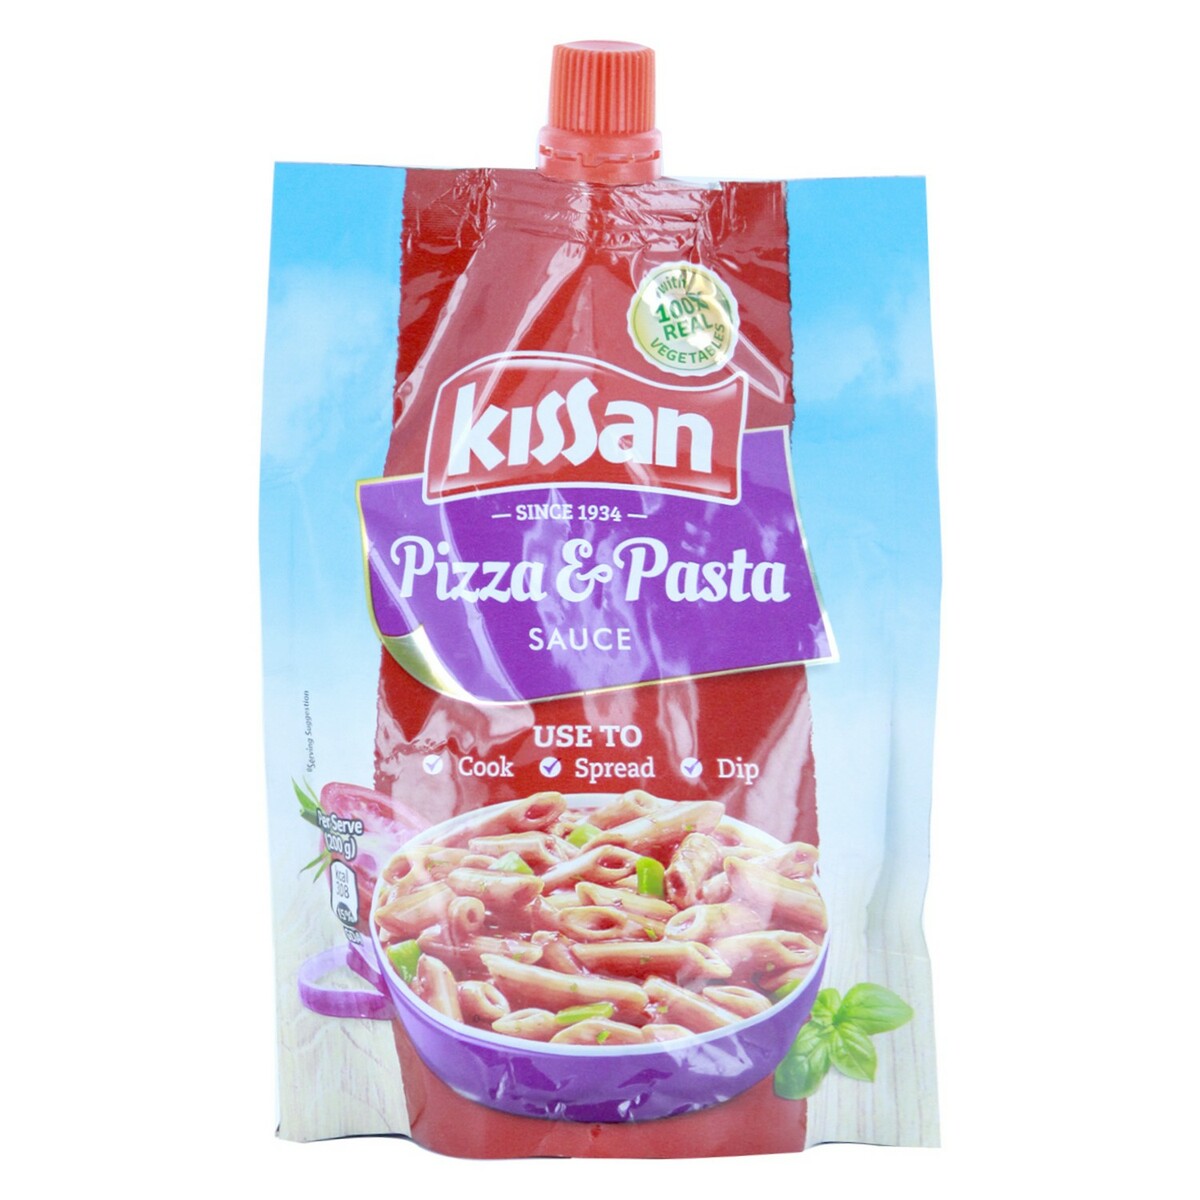 Kissan Pizza & Pasta Sauce 200g